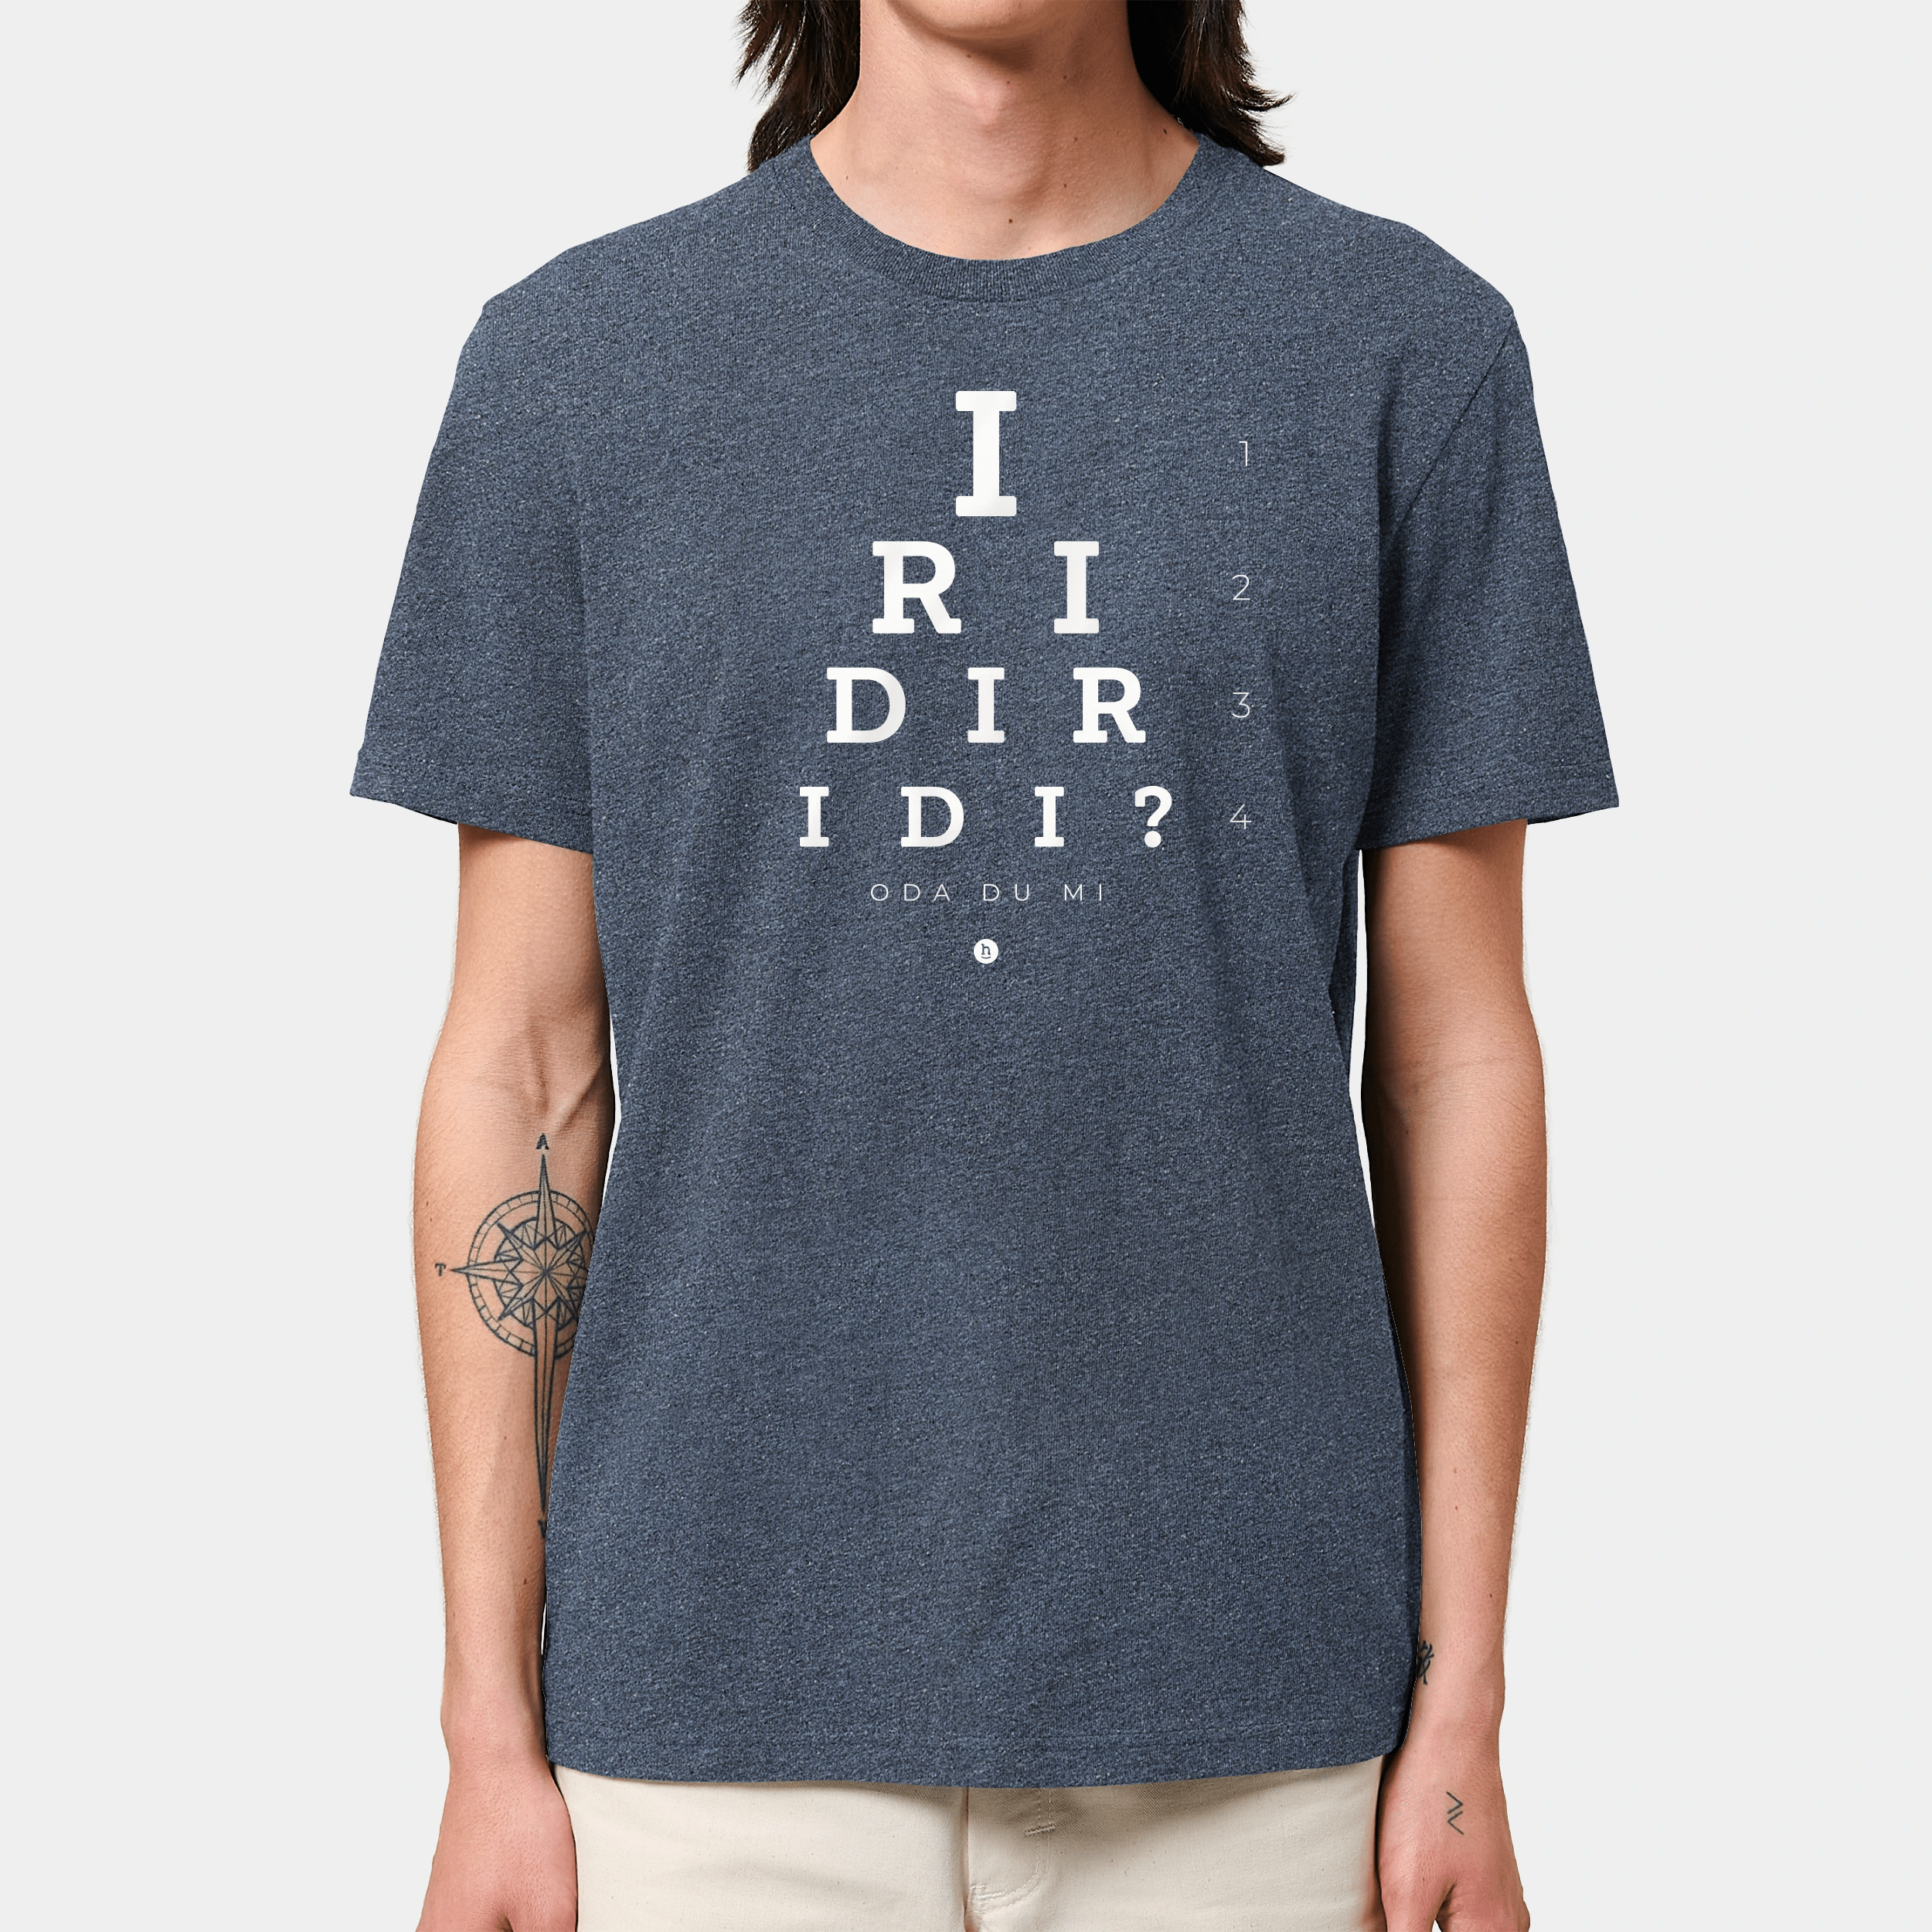 HEITER & LÄSSIG T-Shirt "Iridiridi" - aus nachhaltiger und fairer Produktion